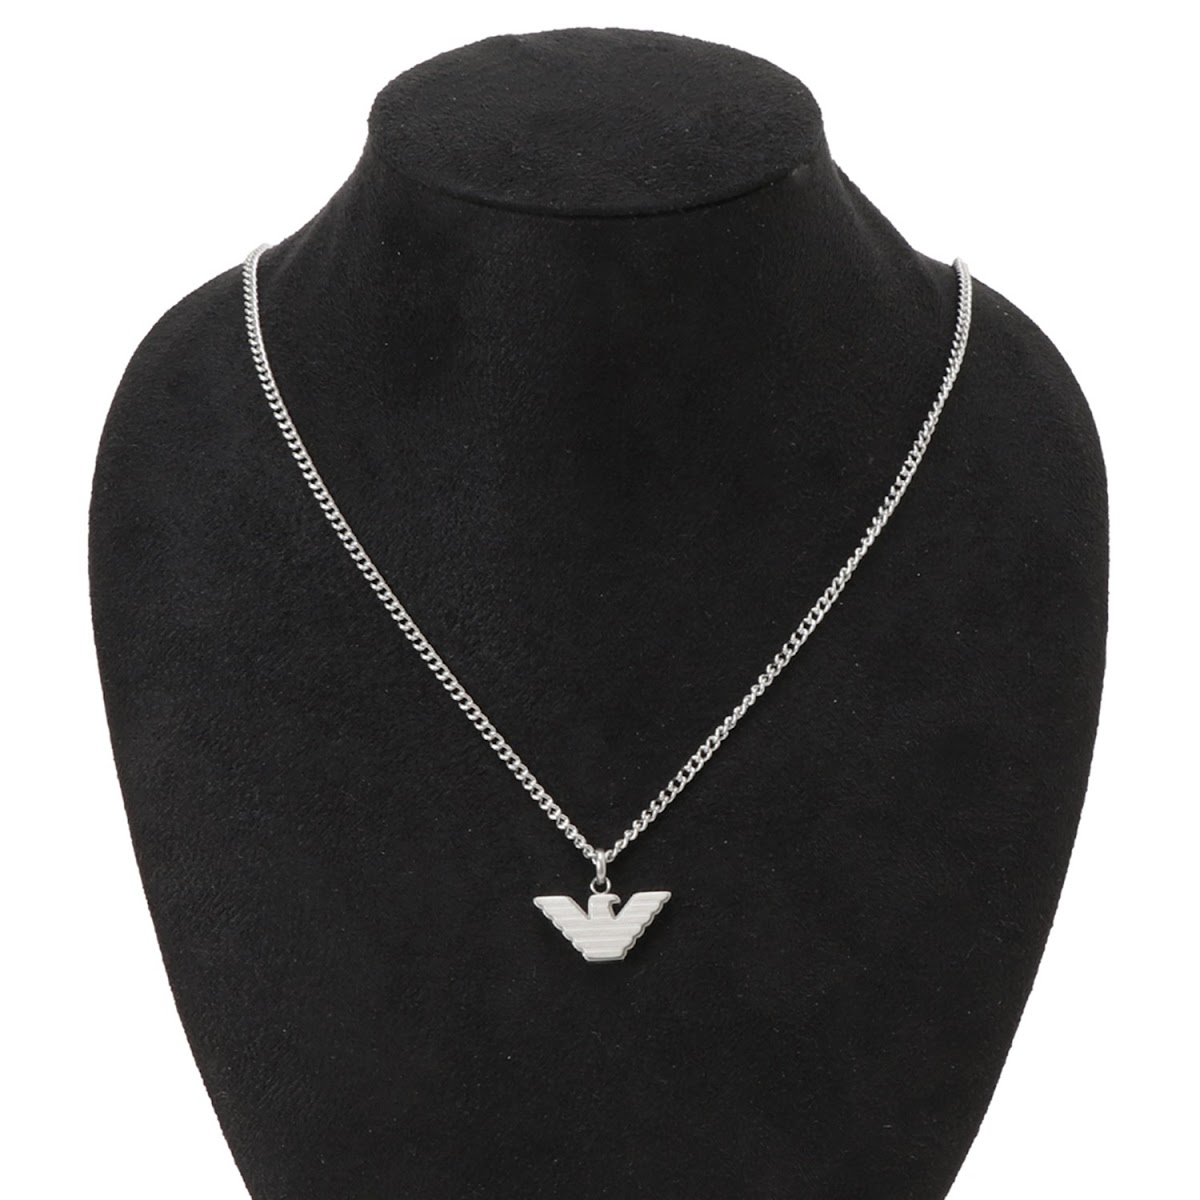  Emporio Armani EMPORIO ARMANI EGS2916040 Eagle Logo necklace pendant silver men's accessory 